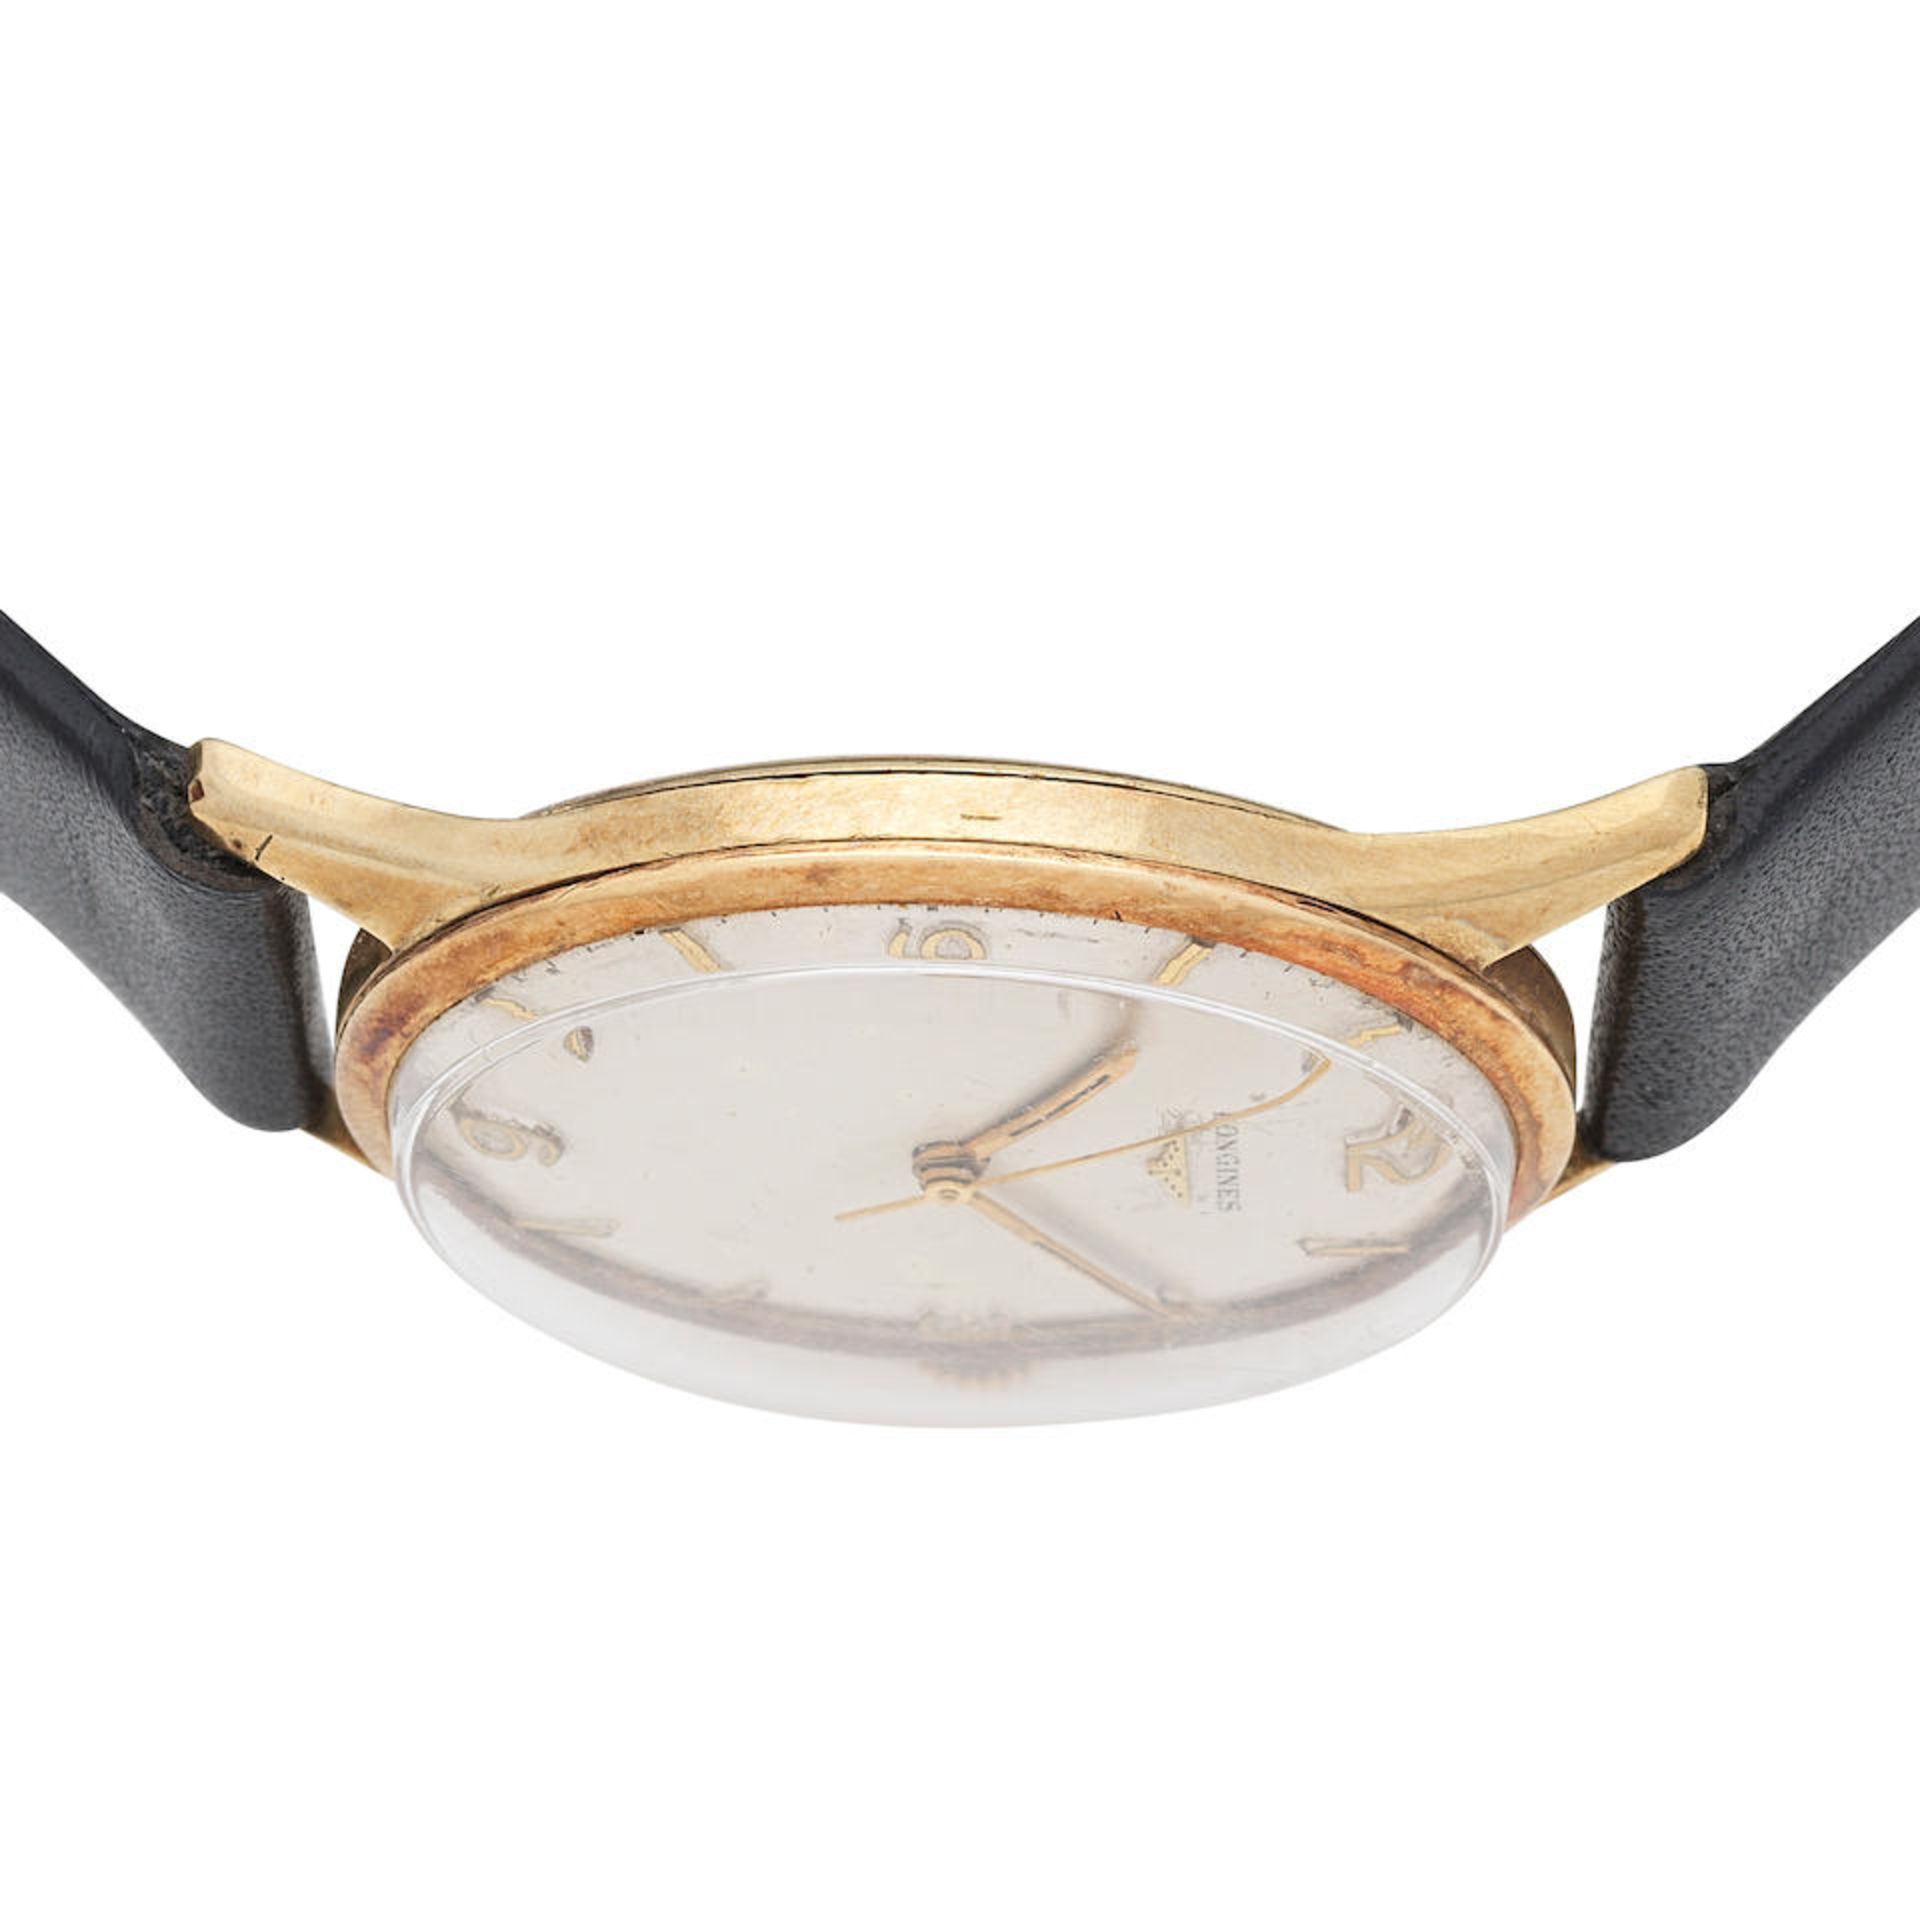 Longines. A 9K gold manual wind wristwatch Ref: 6986 1, Circa 1959 (Hallmarks indistinct) - Bild 2 aus 5